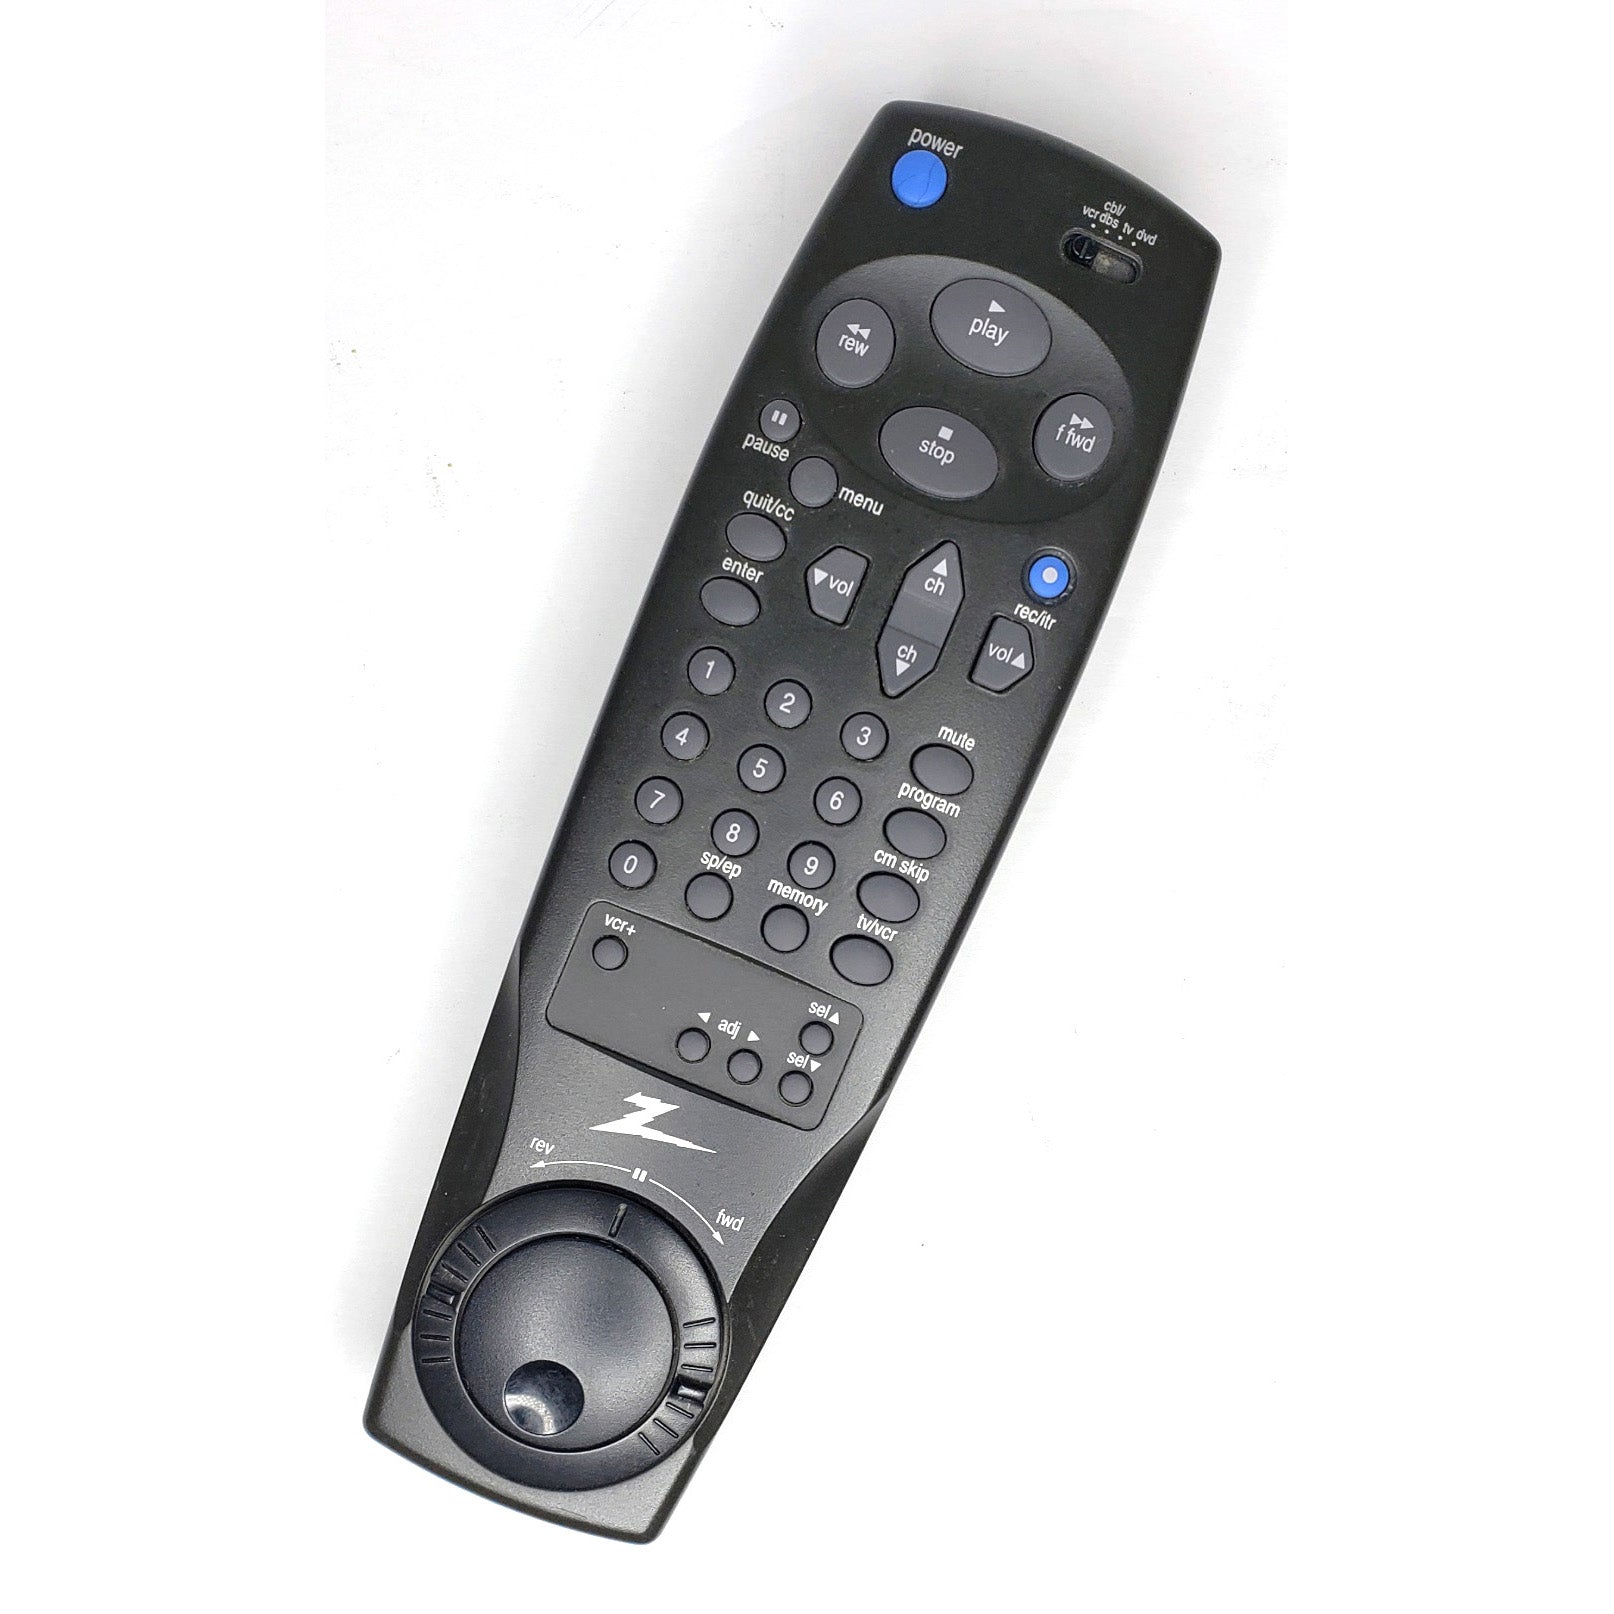 Zenith IQVB425 VCR, 4-Head Hi-Fi Stereo - Remote Control